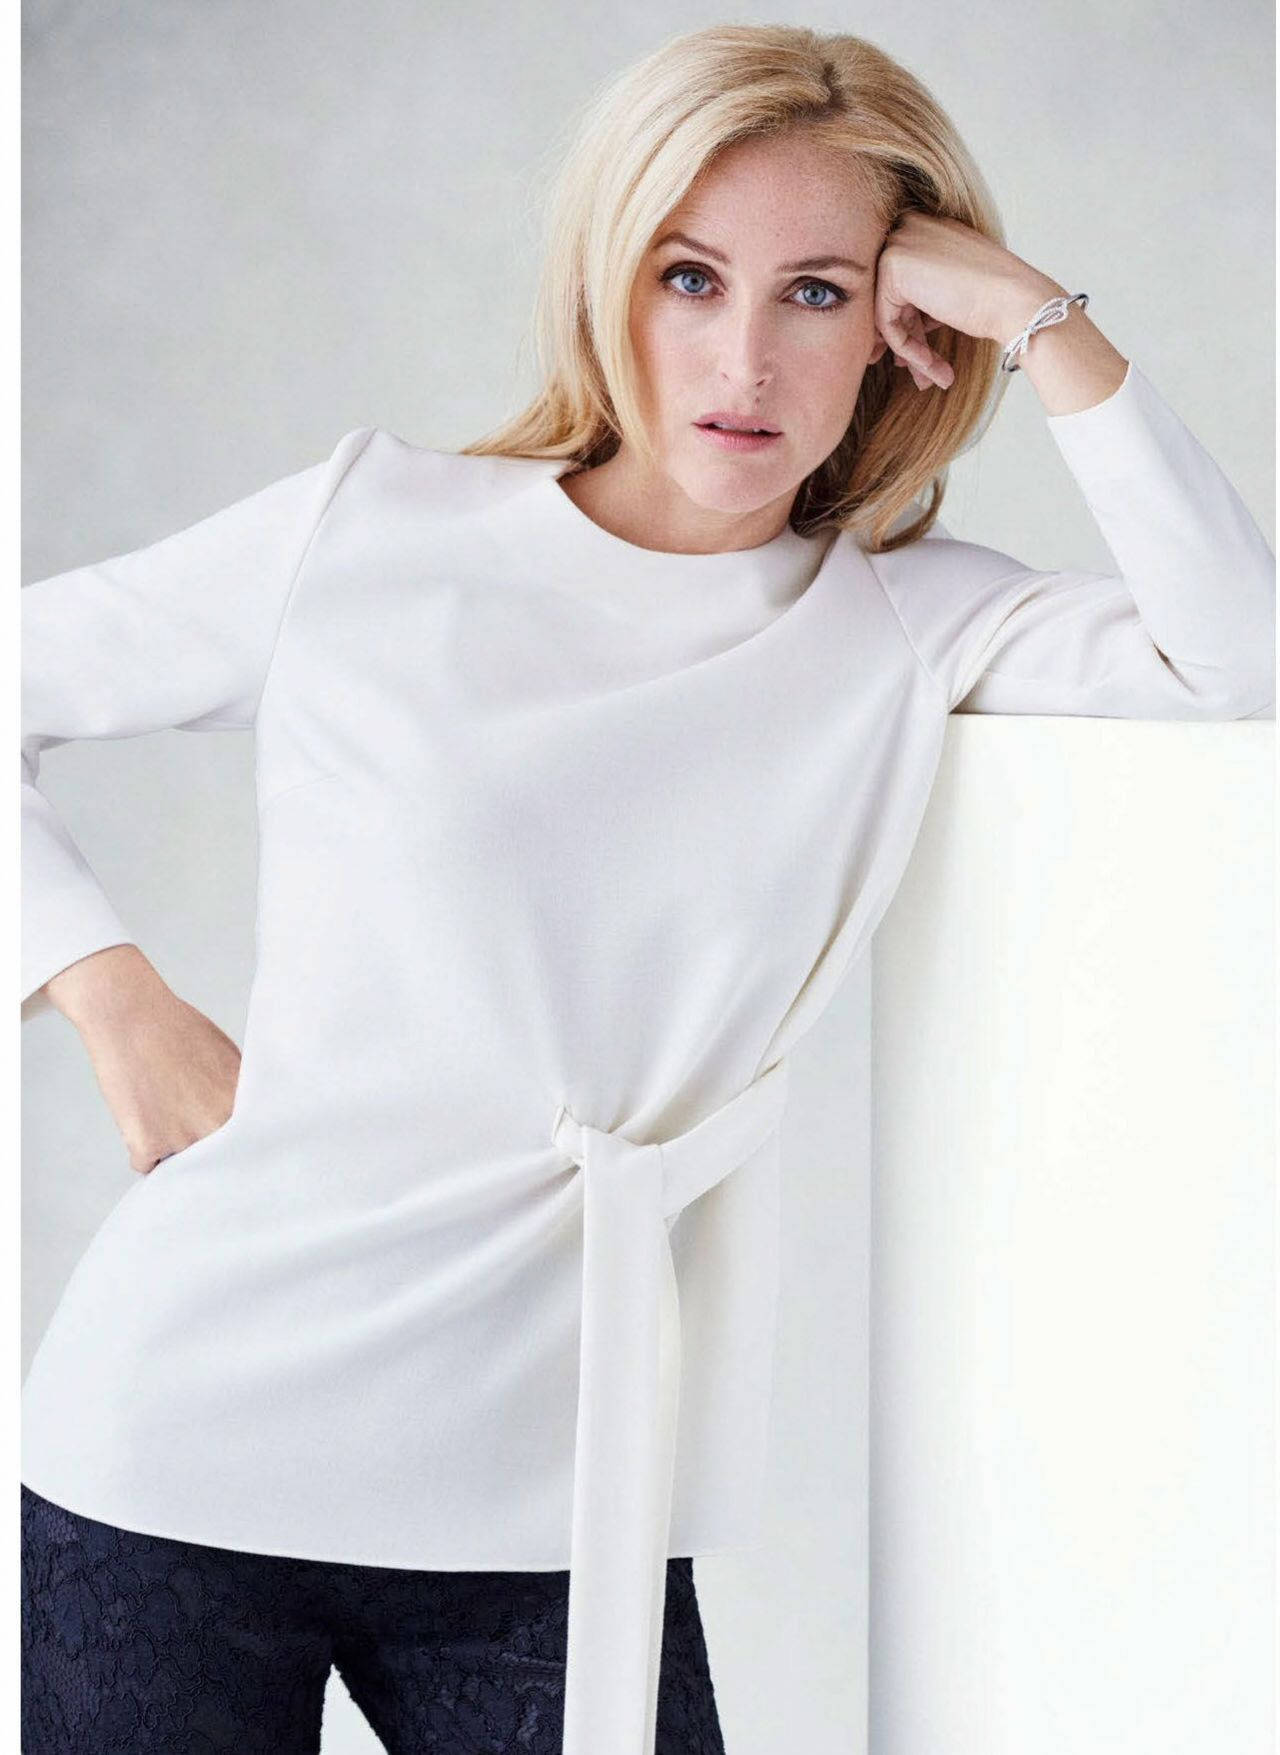 Elegant Gillian Anderson in Harper's Bazaar Magazine Wallpaper